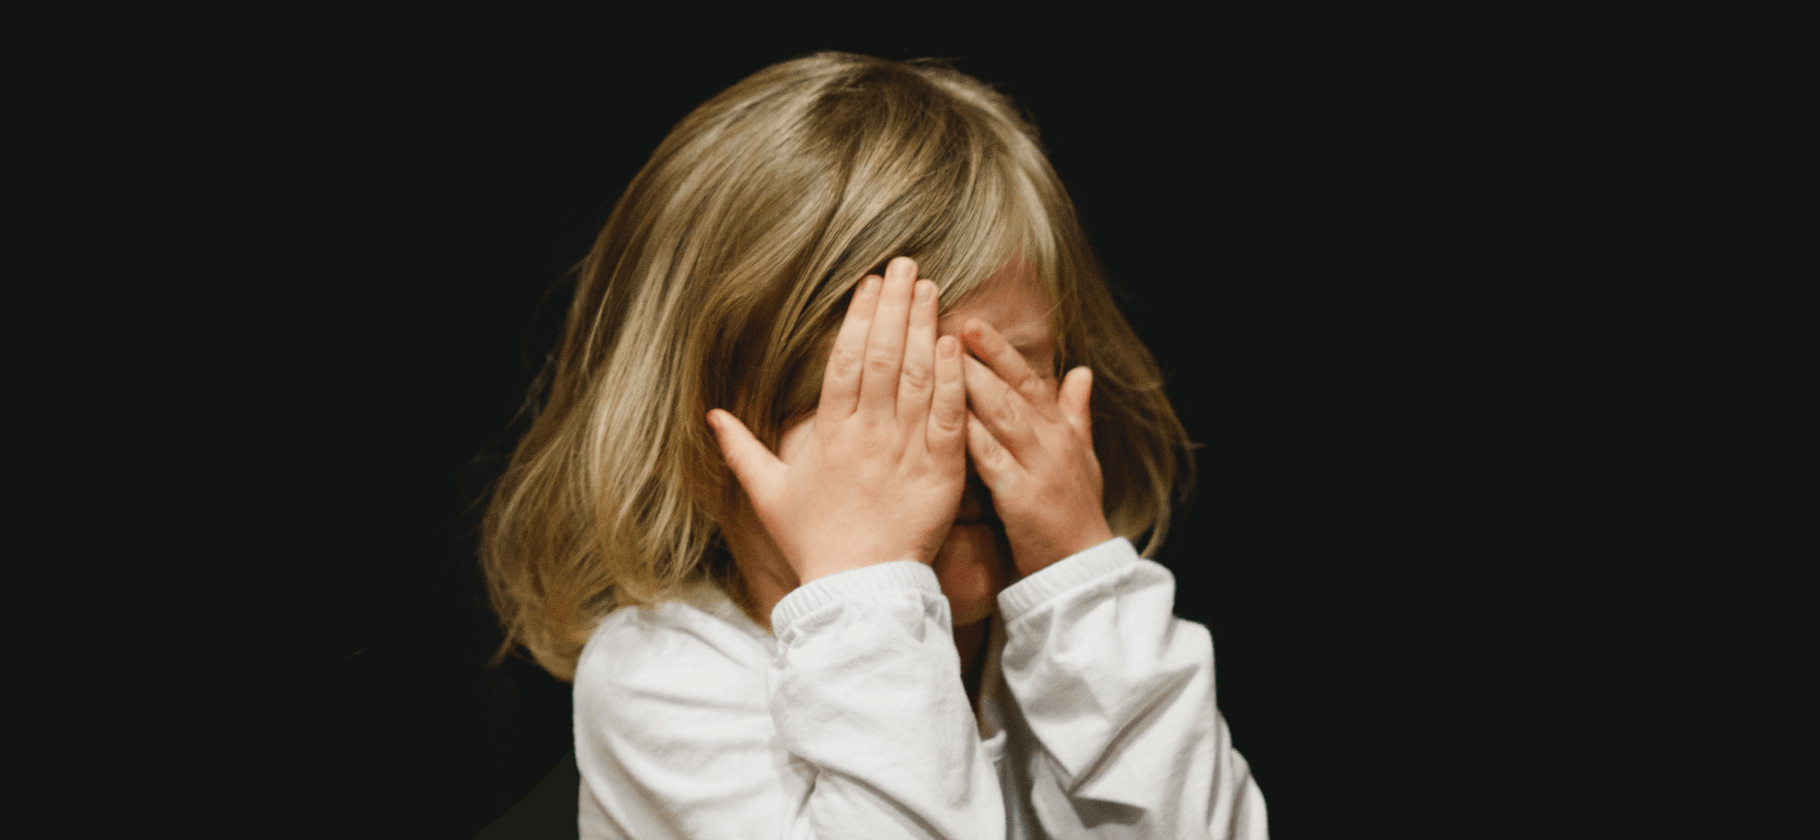 Никогда не говорите это детям: 12 токсичных фраз родителей